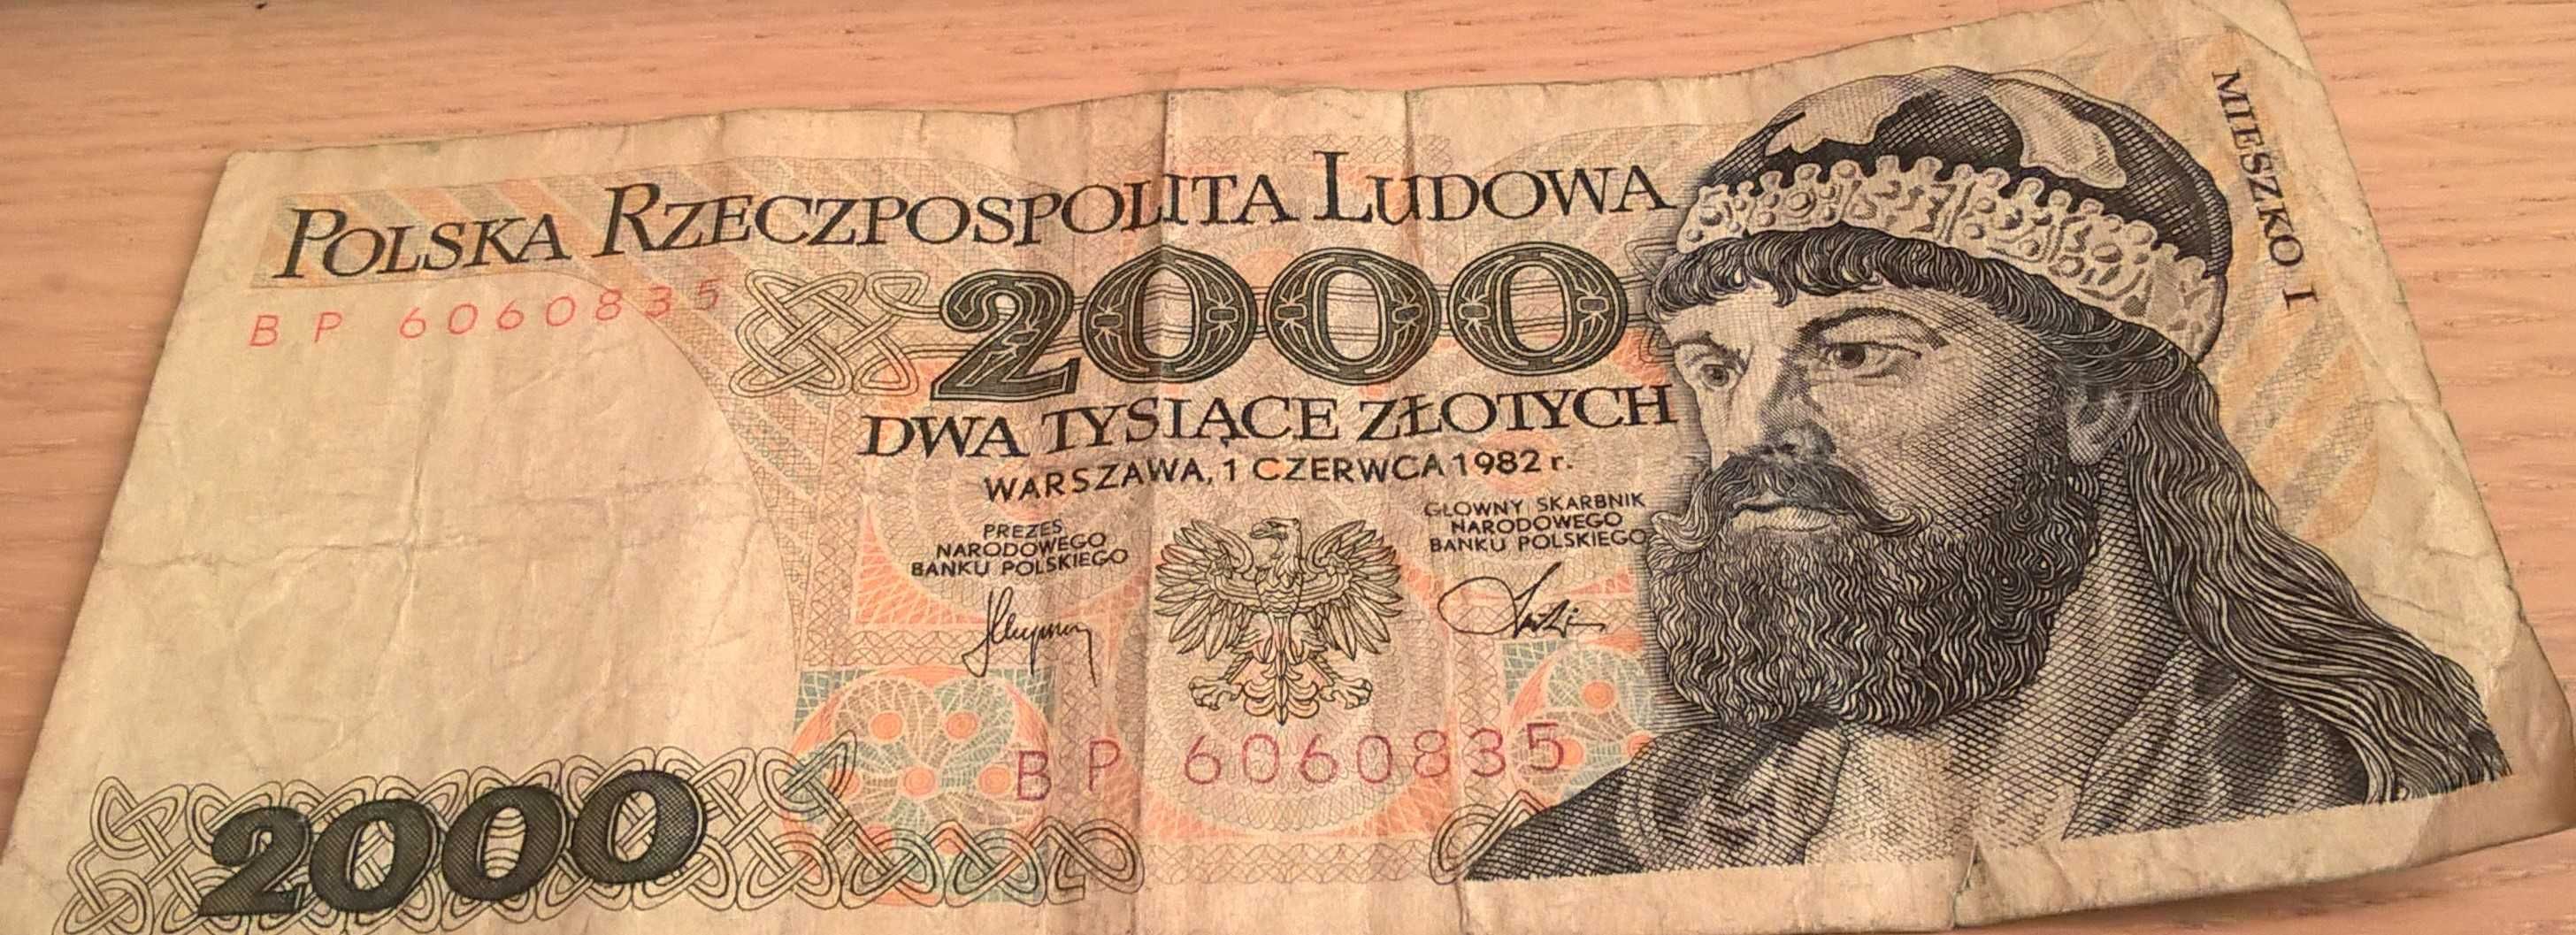 Banknot 2000 zł z 1982 roku sprzedam